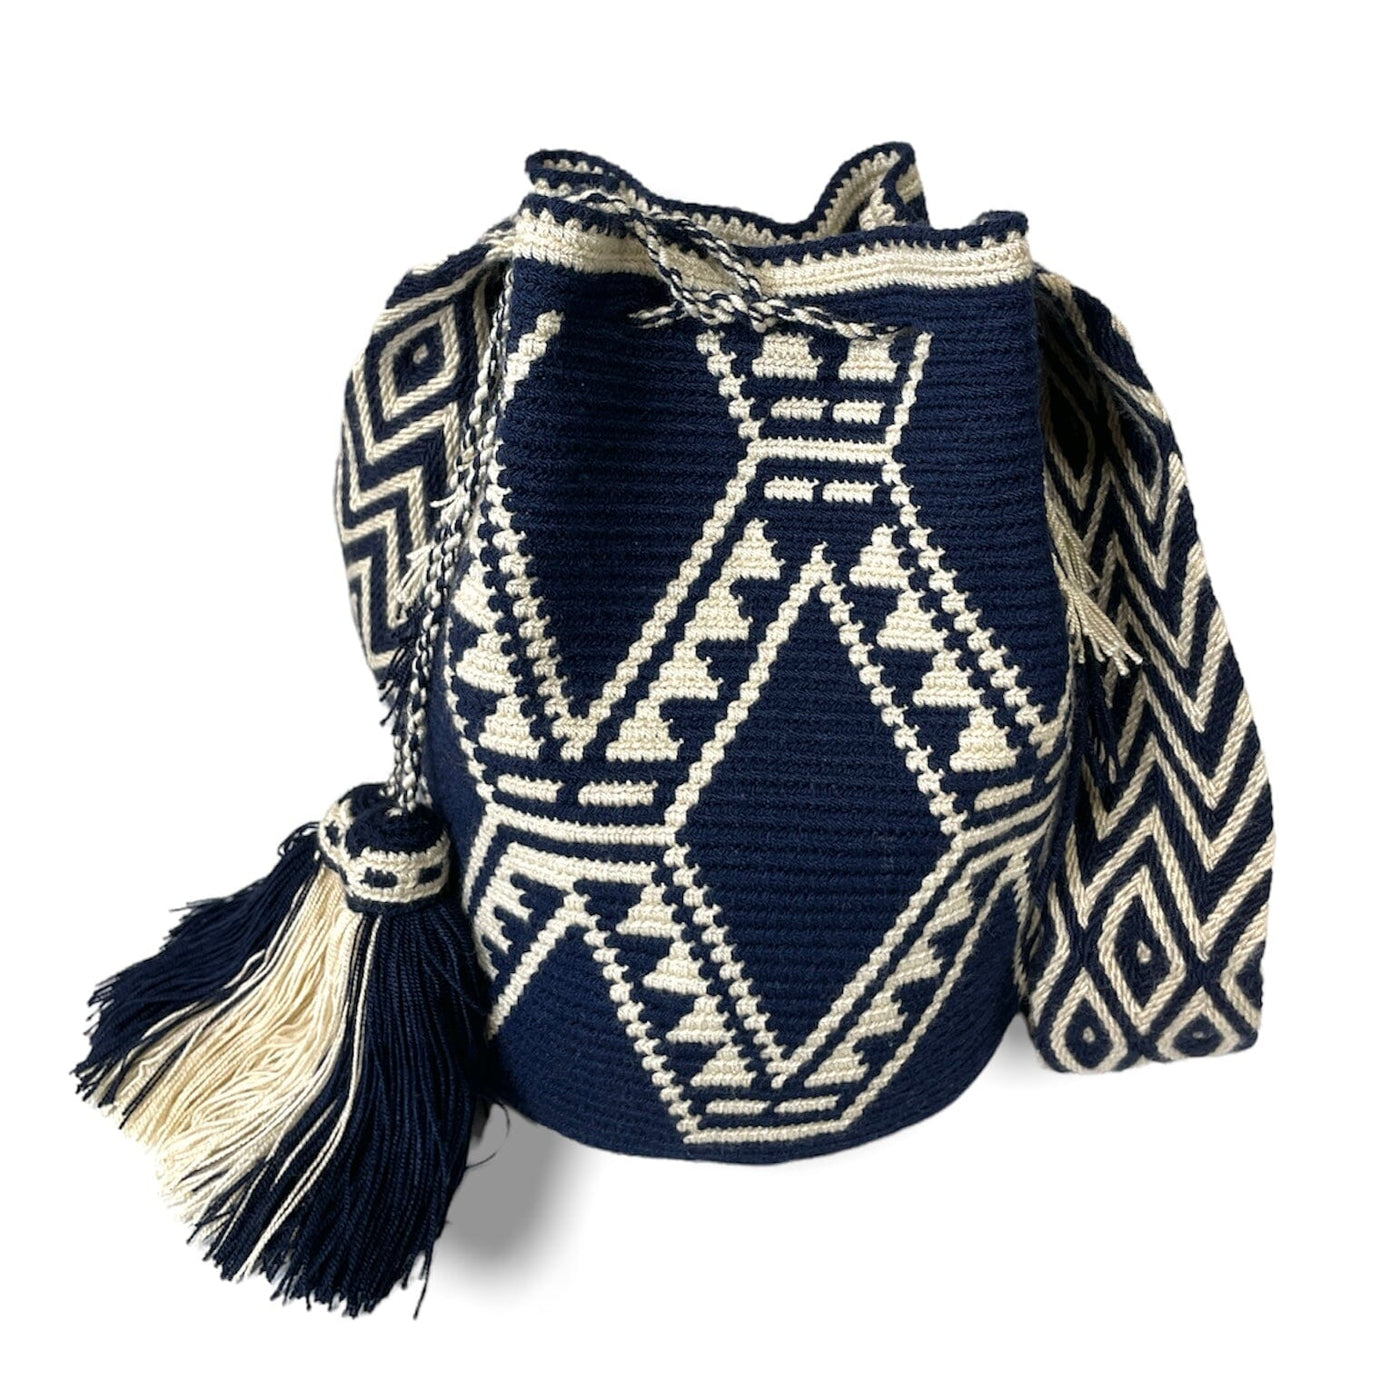 Dark Blue Crochet Bags | Crossbody bohemian handbags